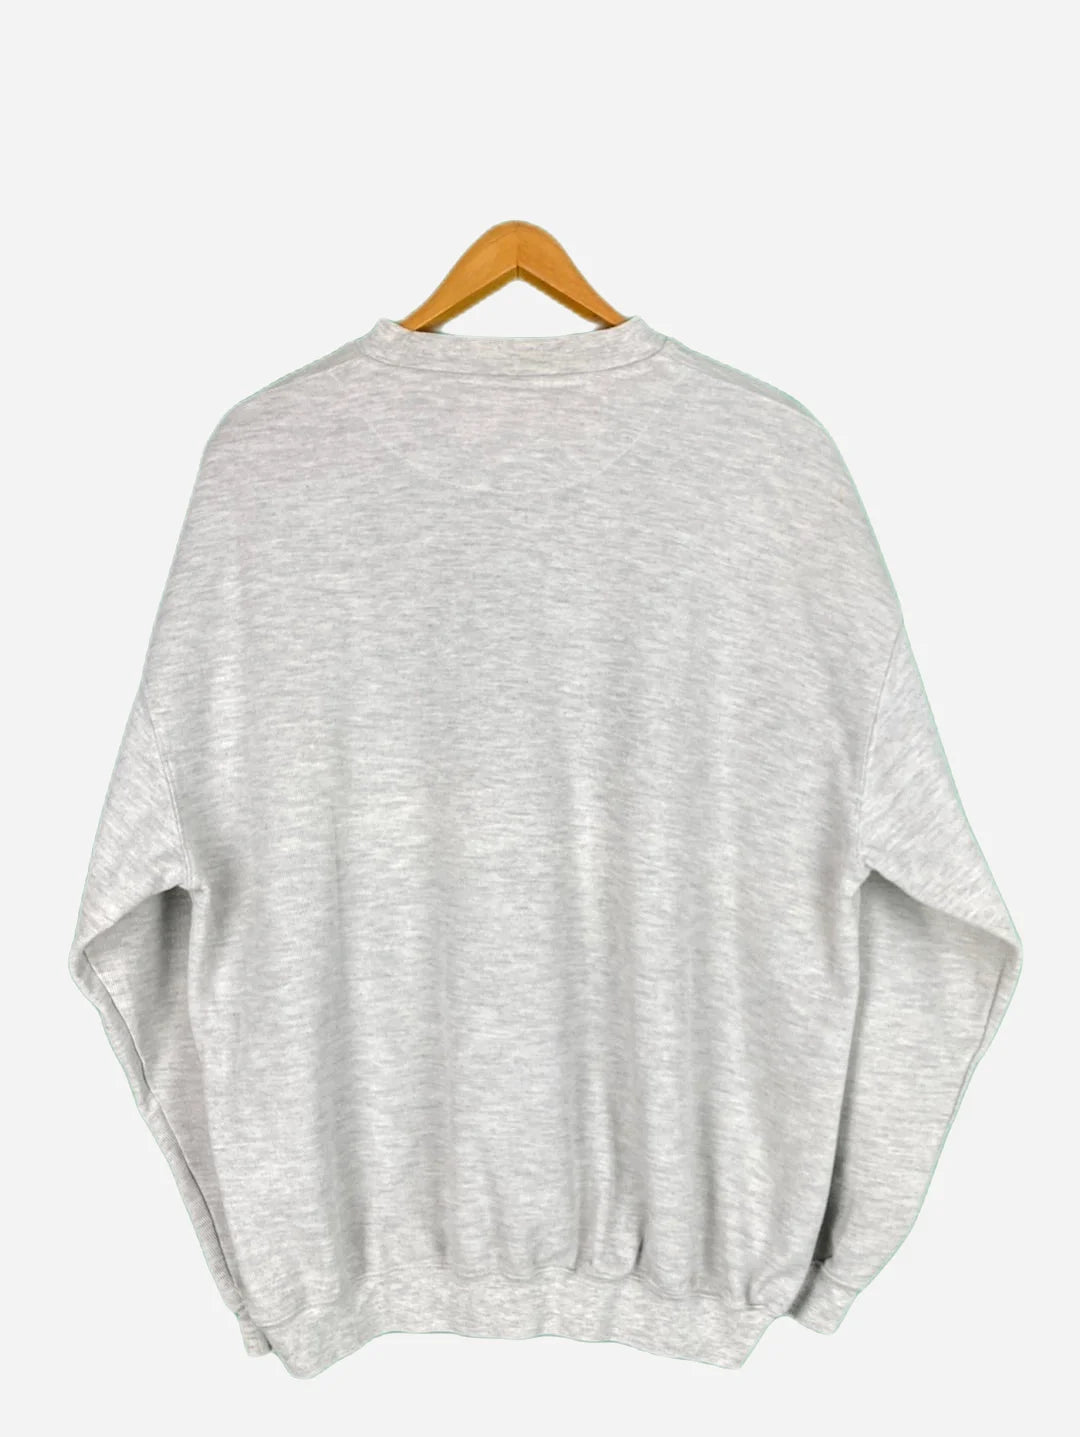 Casualland Sweater (L)